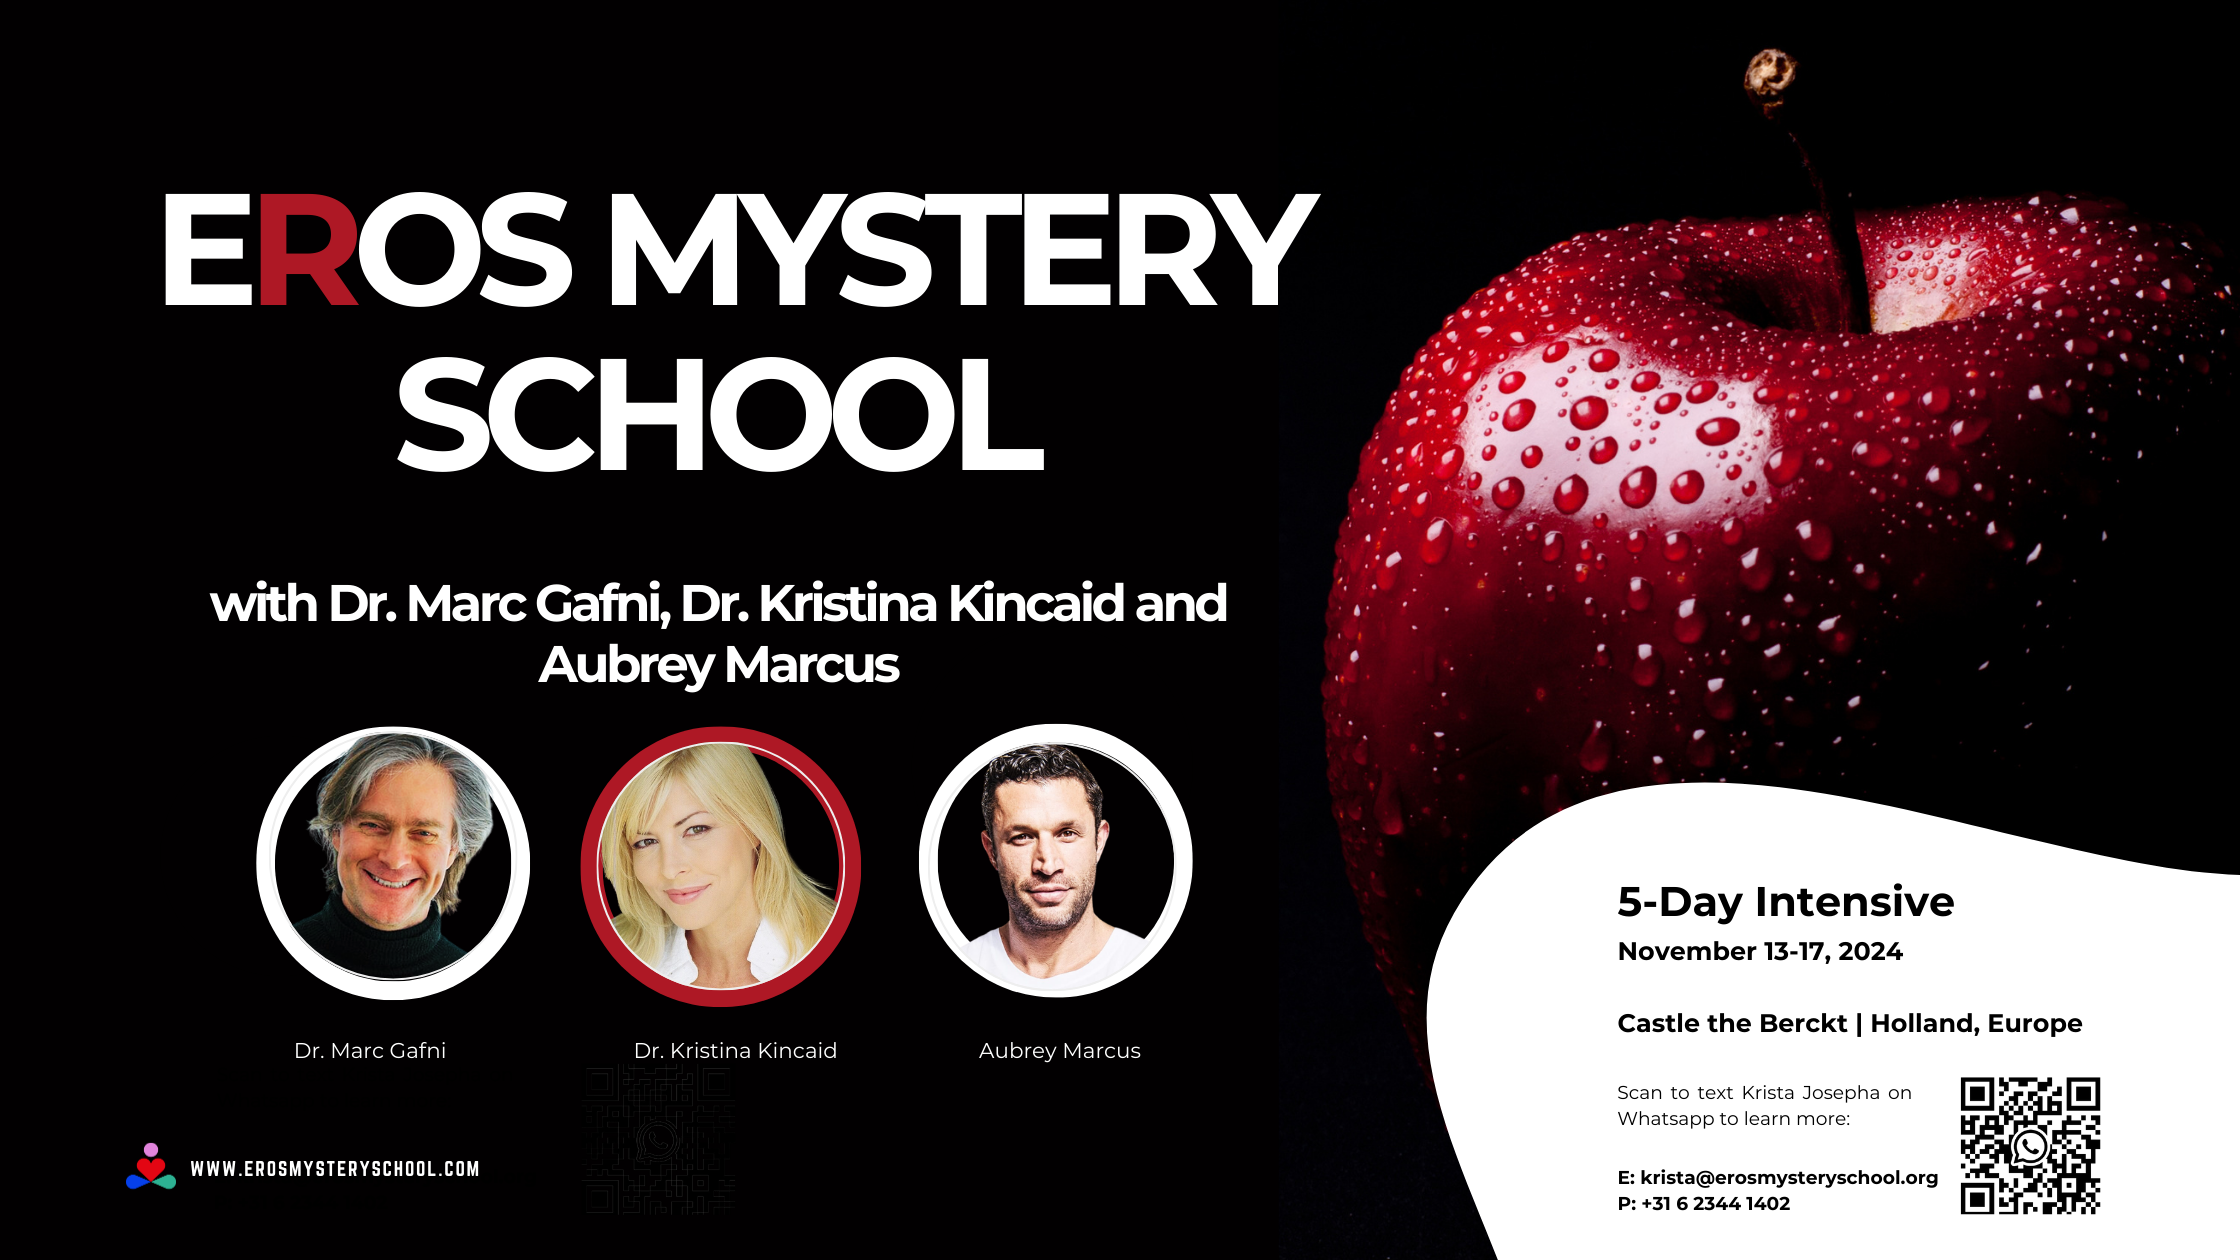 Eros Mystery School with Dr. Marc Gafni, Dr. Kristina Kincaid and Aubrey Marcus